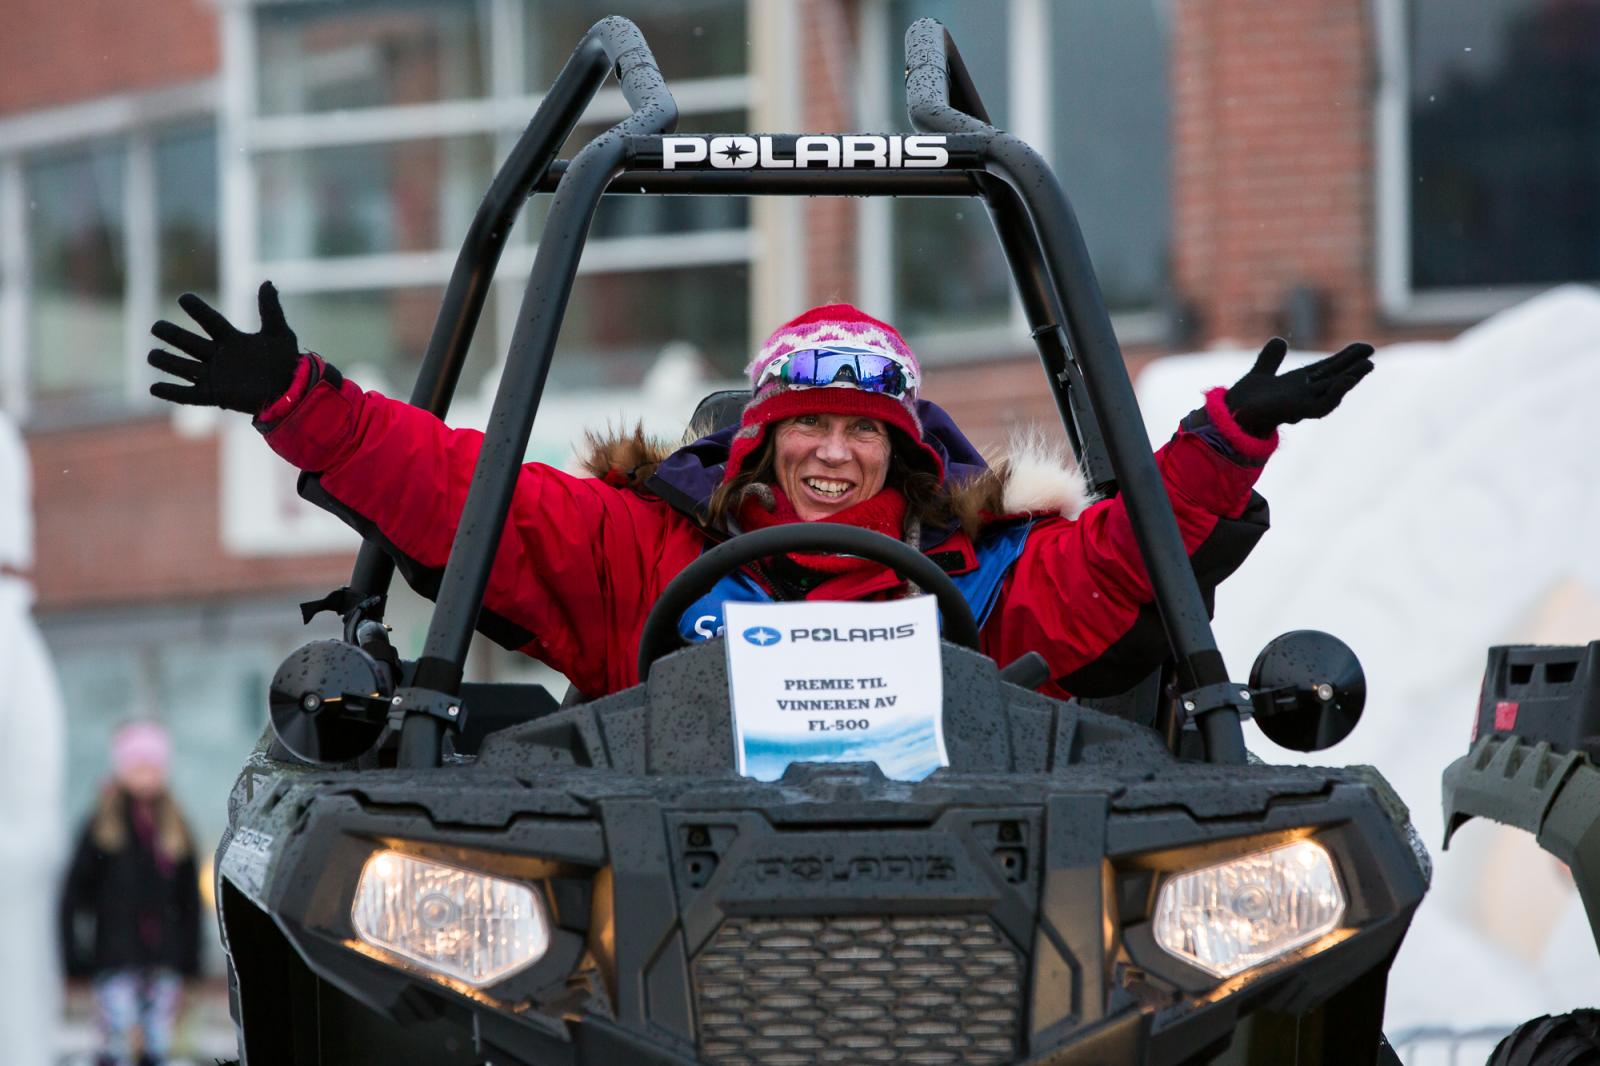 TRE GANGER EDLAND: Elisabeth Edland har vunnet FL-500 tre ganger. Her sitter hun på premien hun vant i 2015, en Polaris ATV verdt ca. 100 000 kroner. Foto: Steinar Vik.